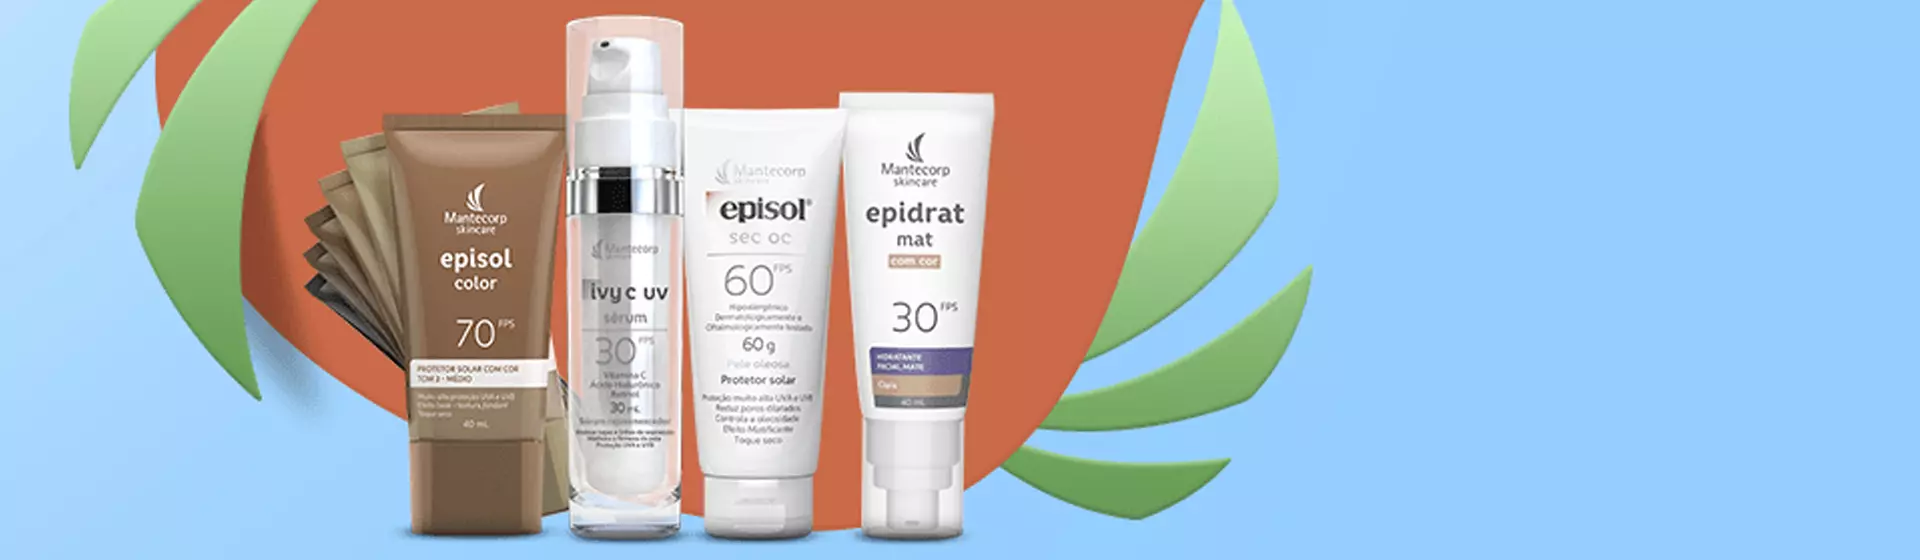 Protetor solar Episol: 6 opções mais indicadas da marca para proteger a pele